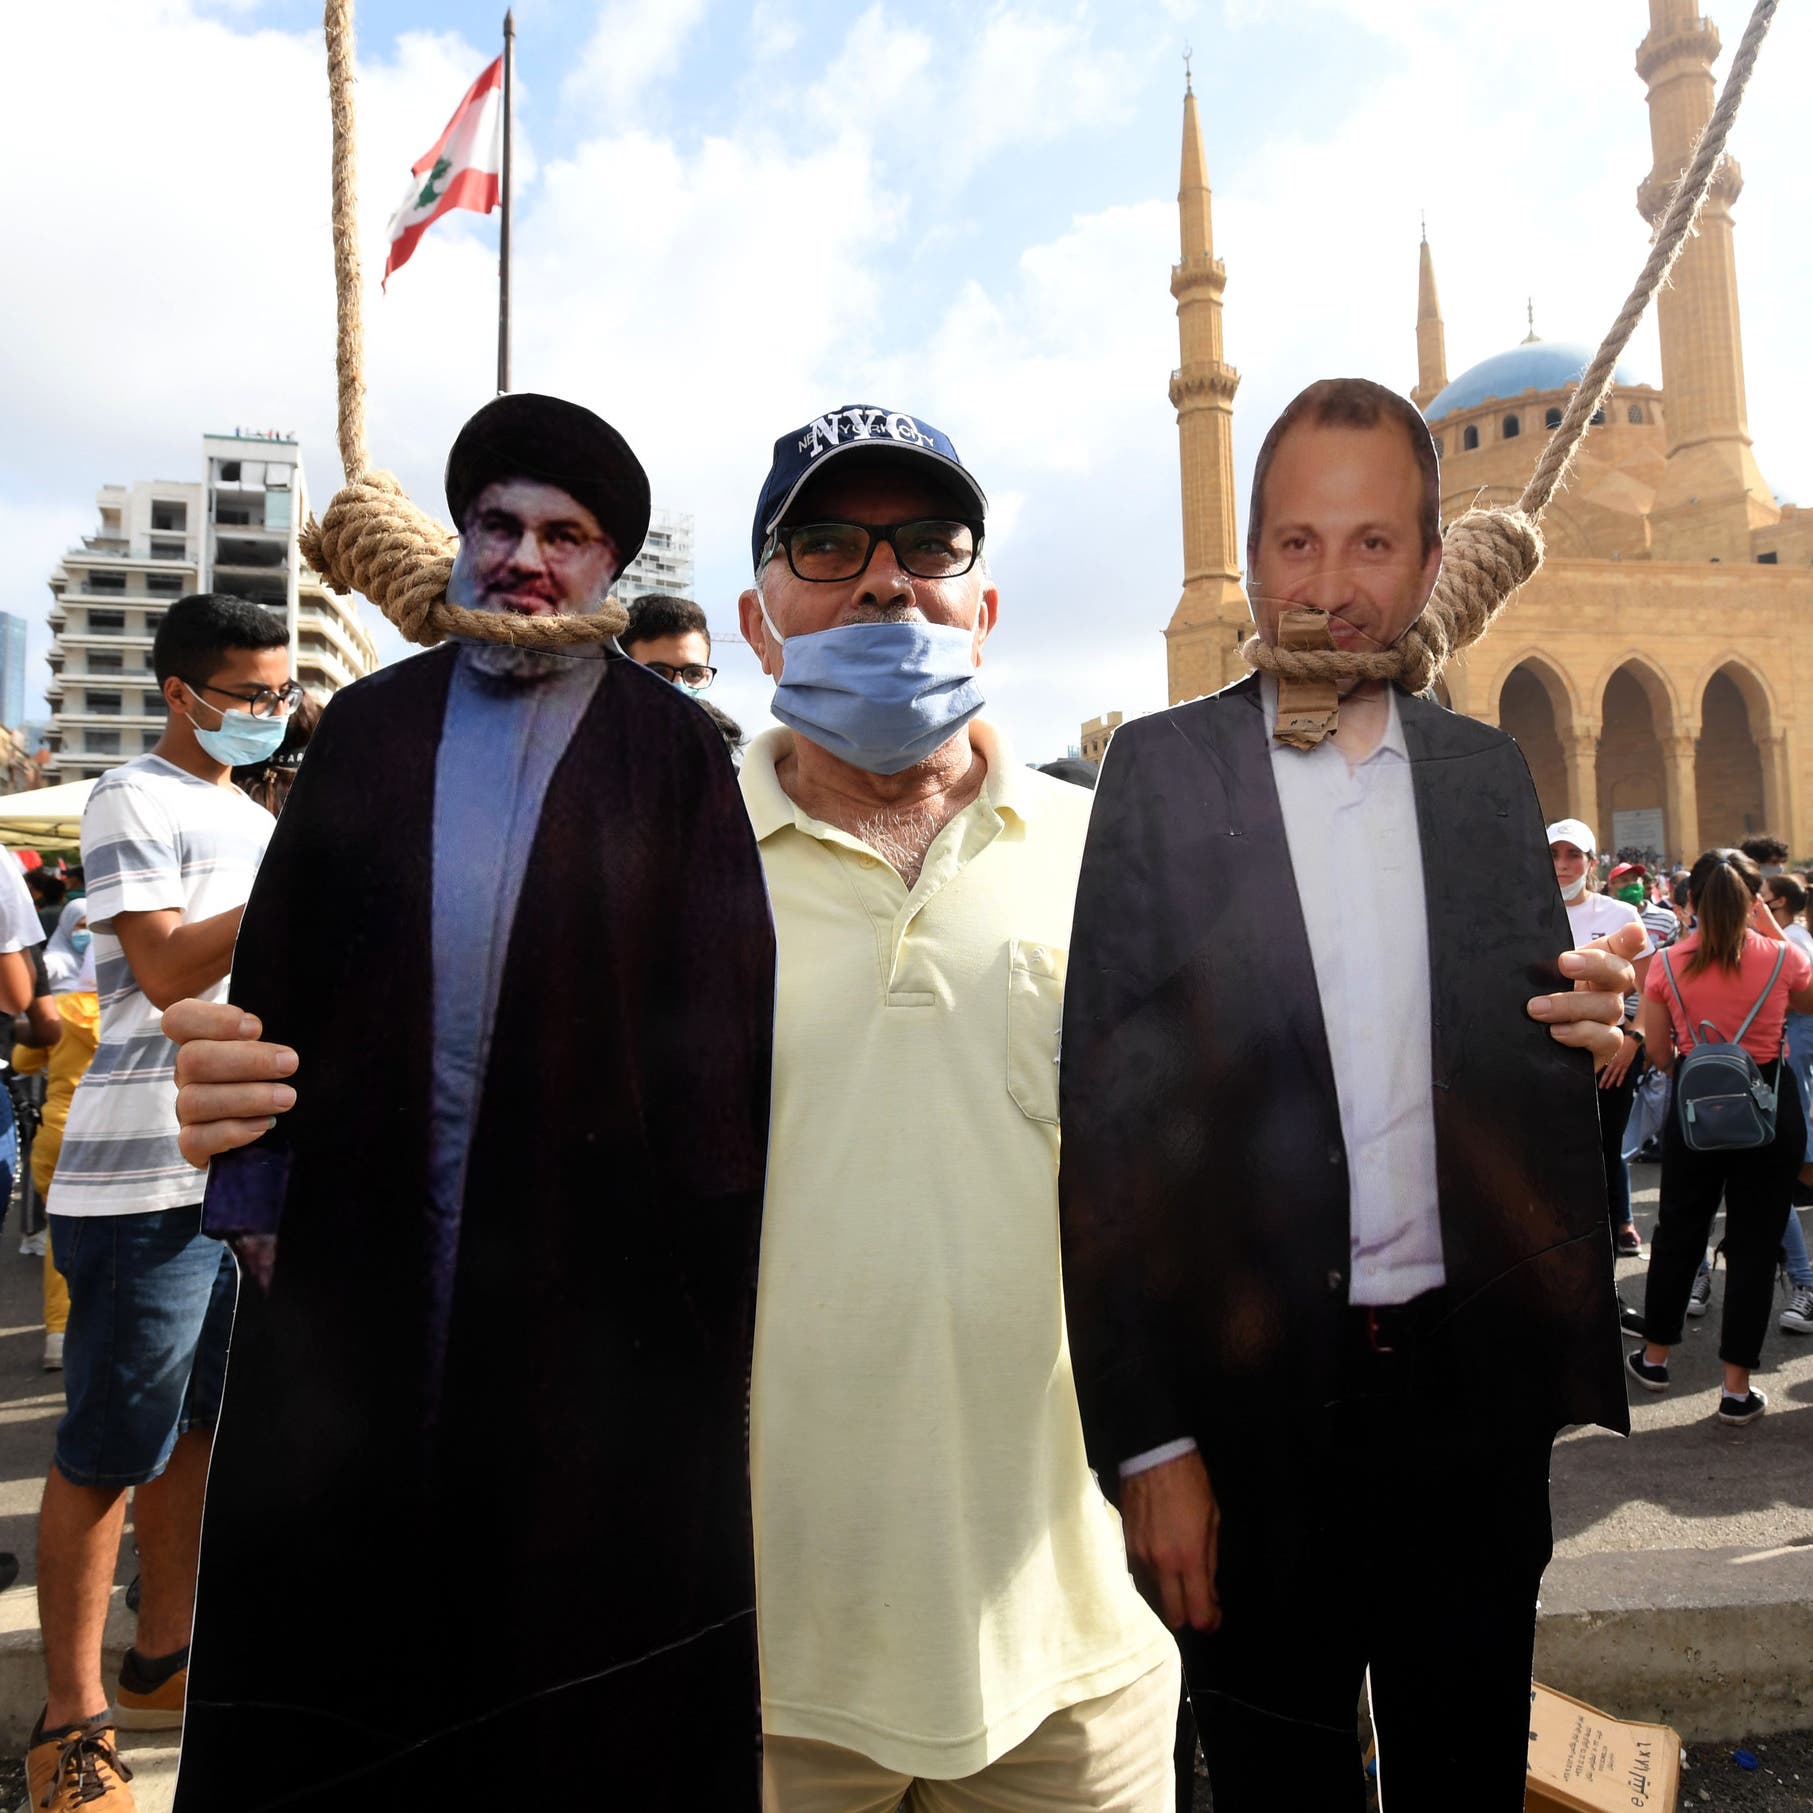 بعد باسيل..ظل العقوبات الأميركية باق فوق سياسيي لبنان